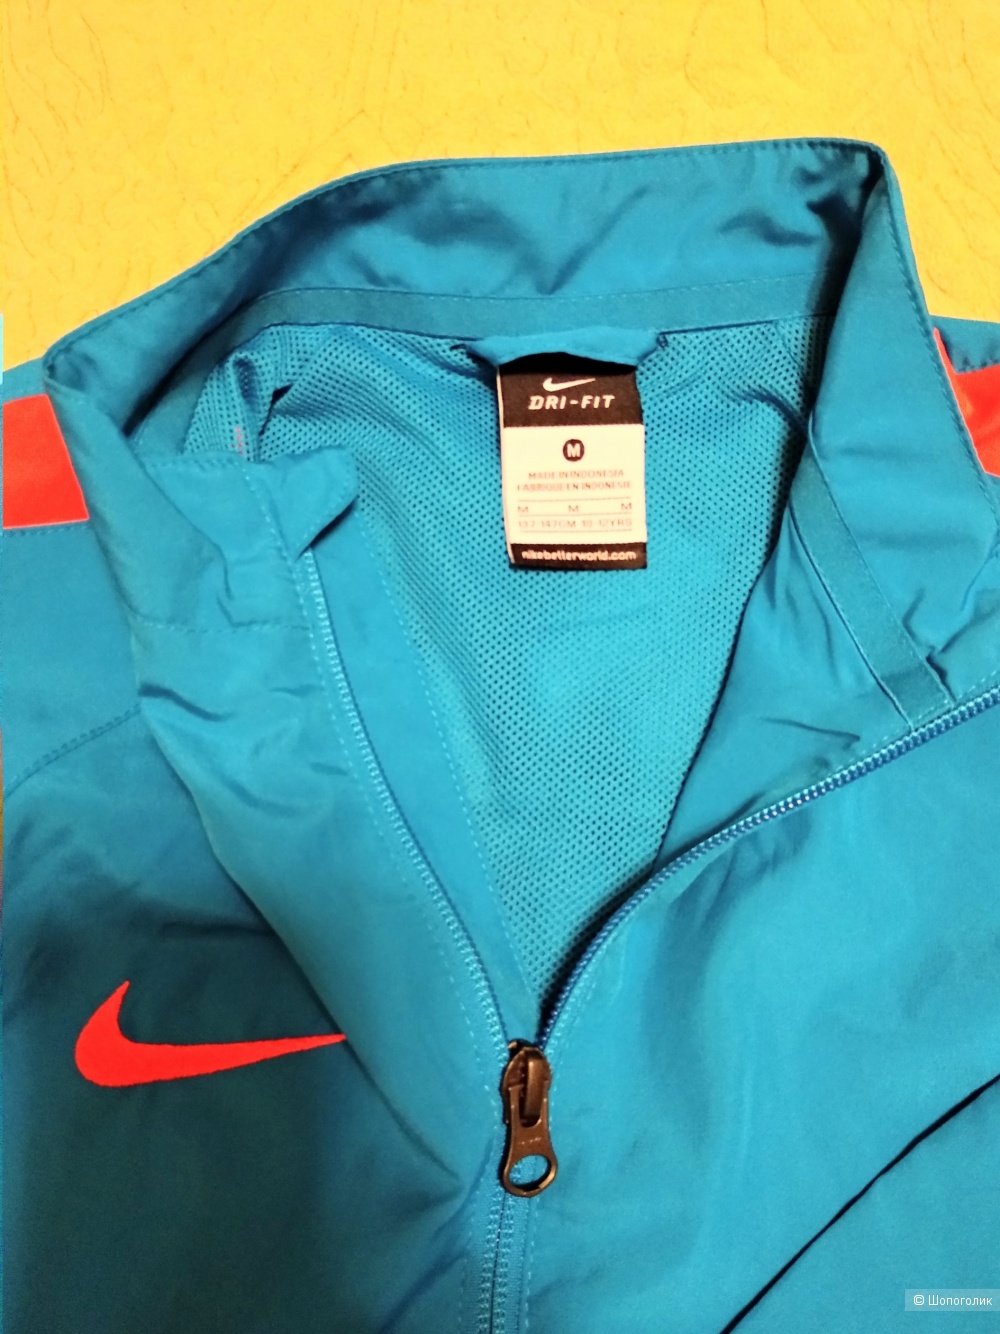 Куртка Nike Dri-FIT, разм. 10-12 лет ( рост137-147 см)